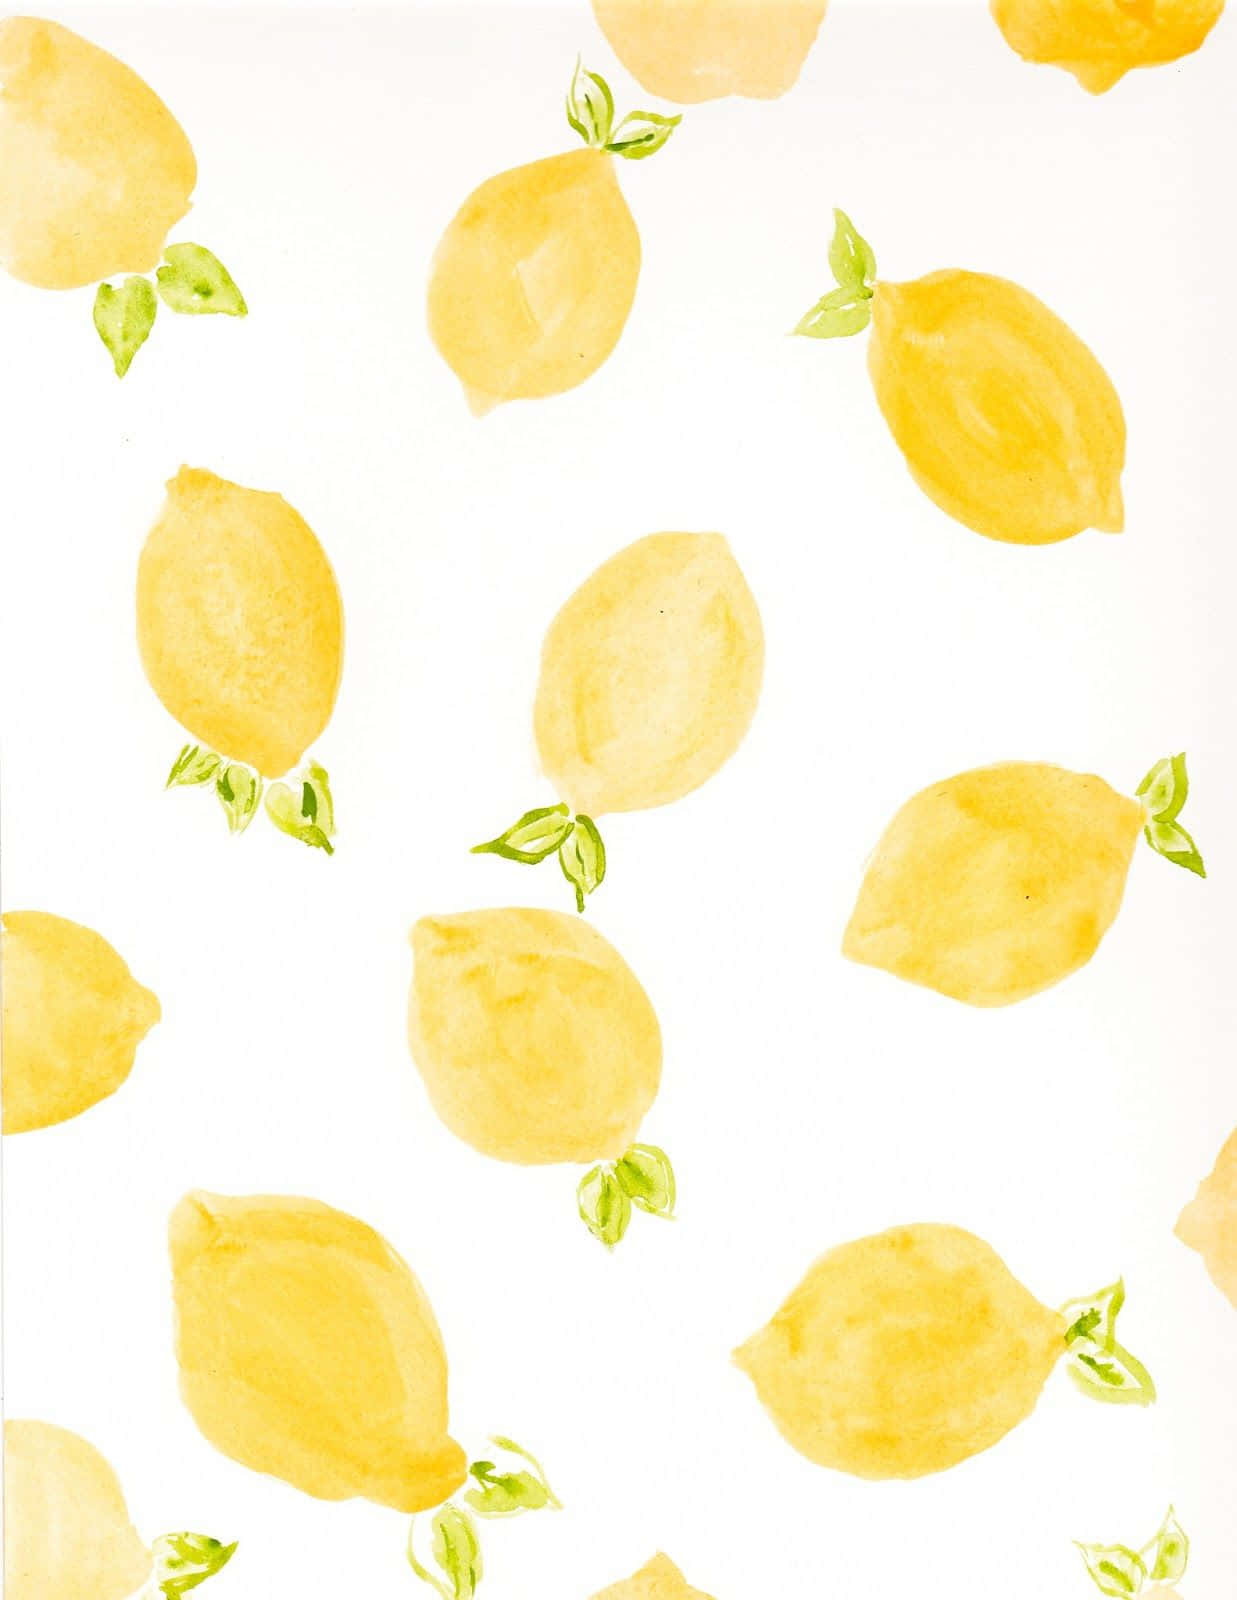 Bringensie Mit Dieser Ästhetischen Zitrone Etwas Helligkeit In Ihren Tag! Wallpaper